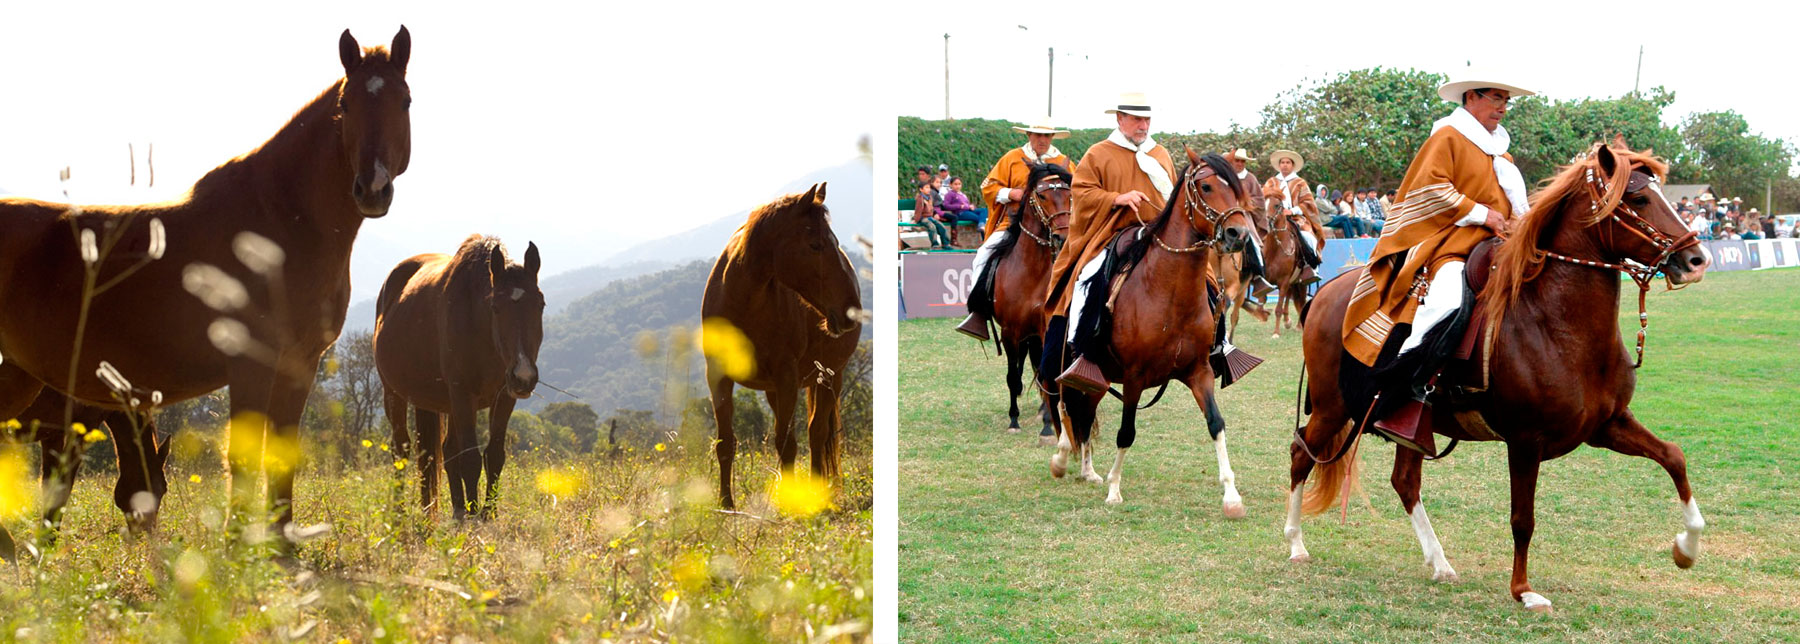 Eigenschaften des peruanischen Paso-Pferdes